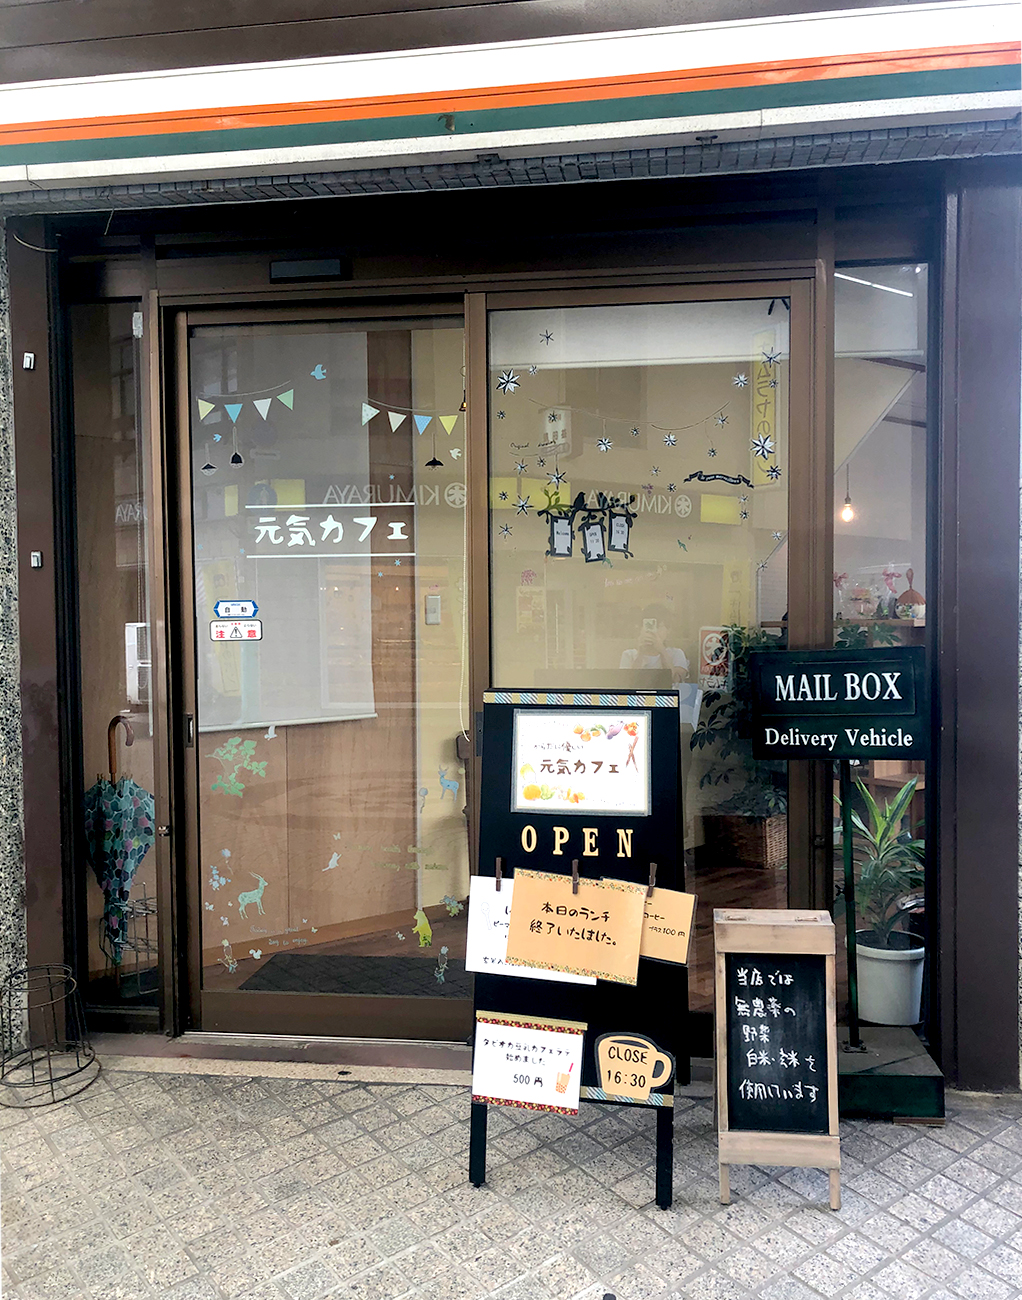 食レポ付き 岡山奉還町商店街のカフェ 喫茶店 厳選7店を紹介します